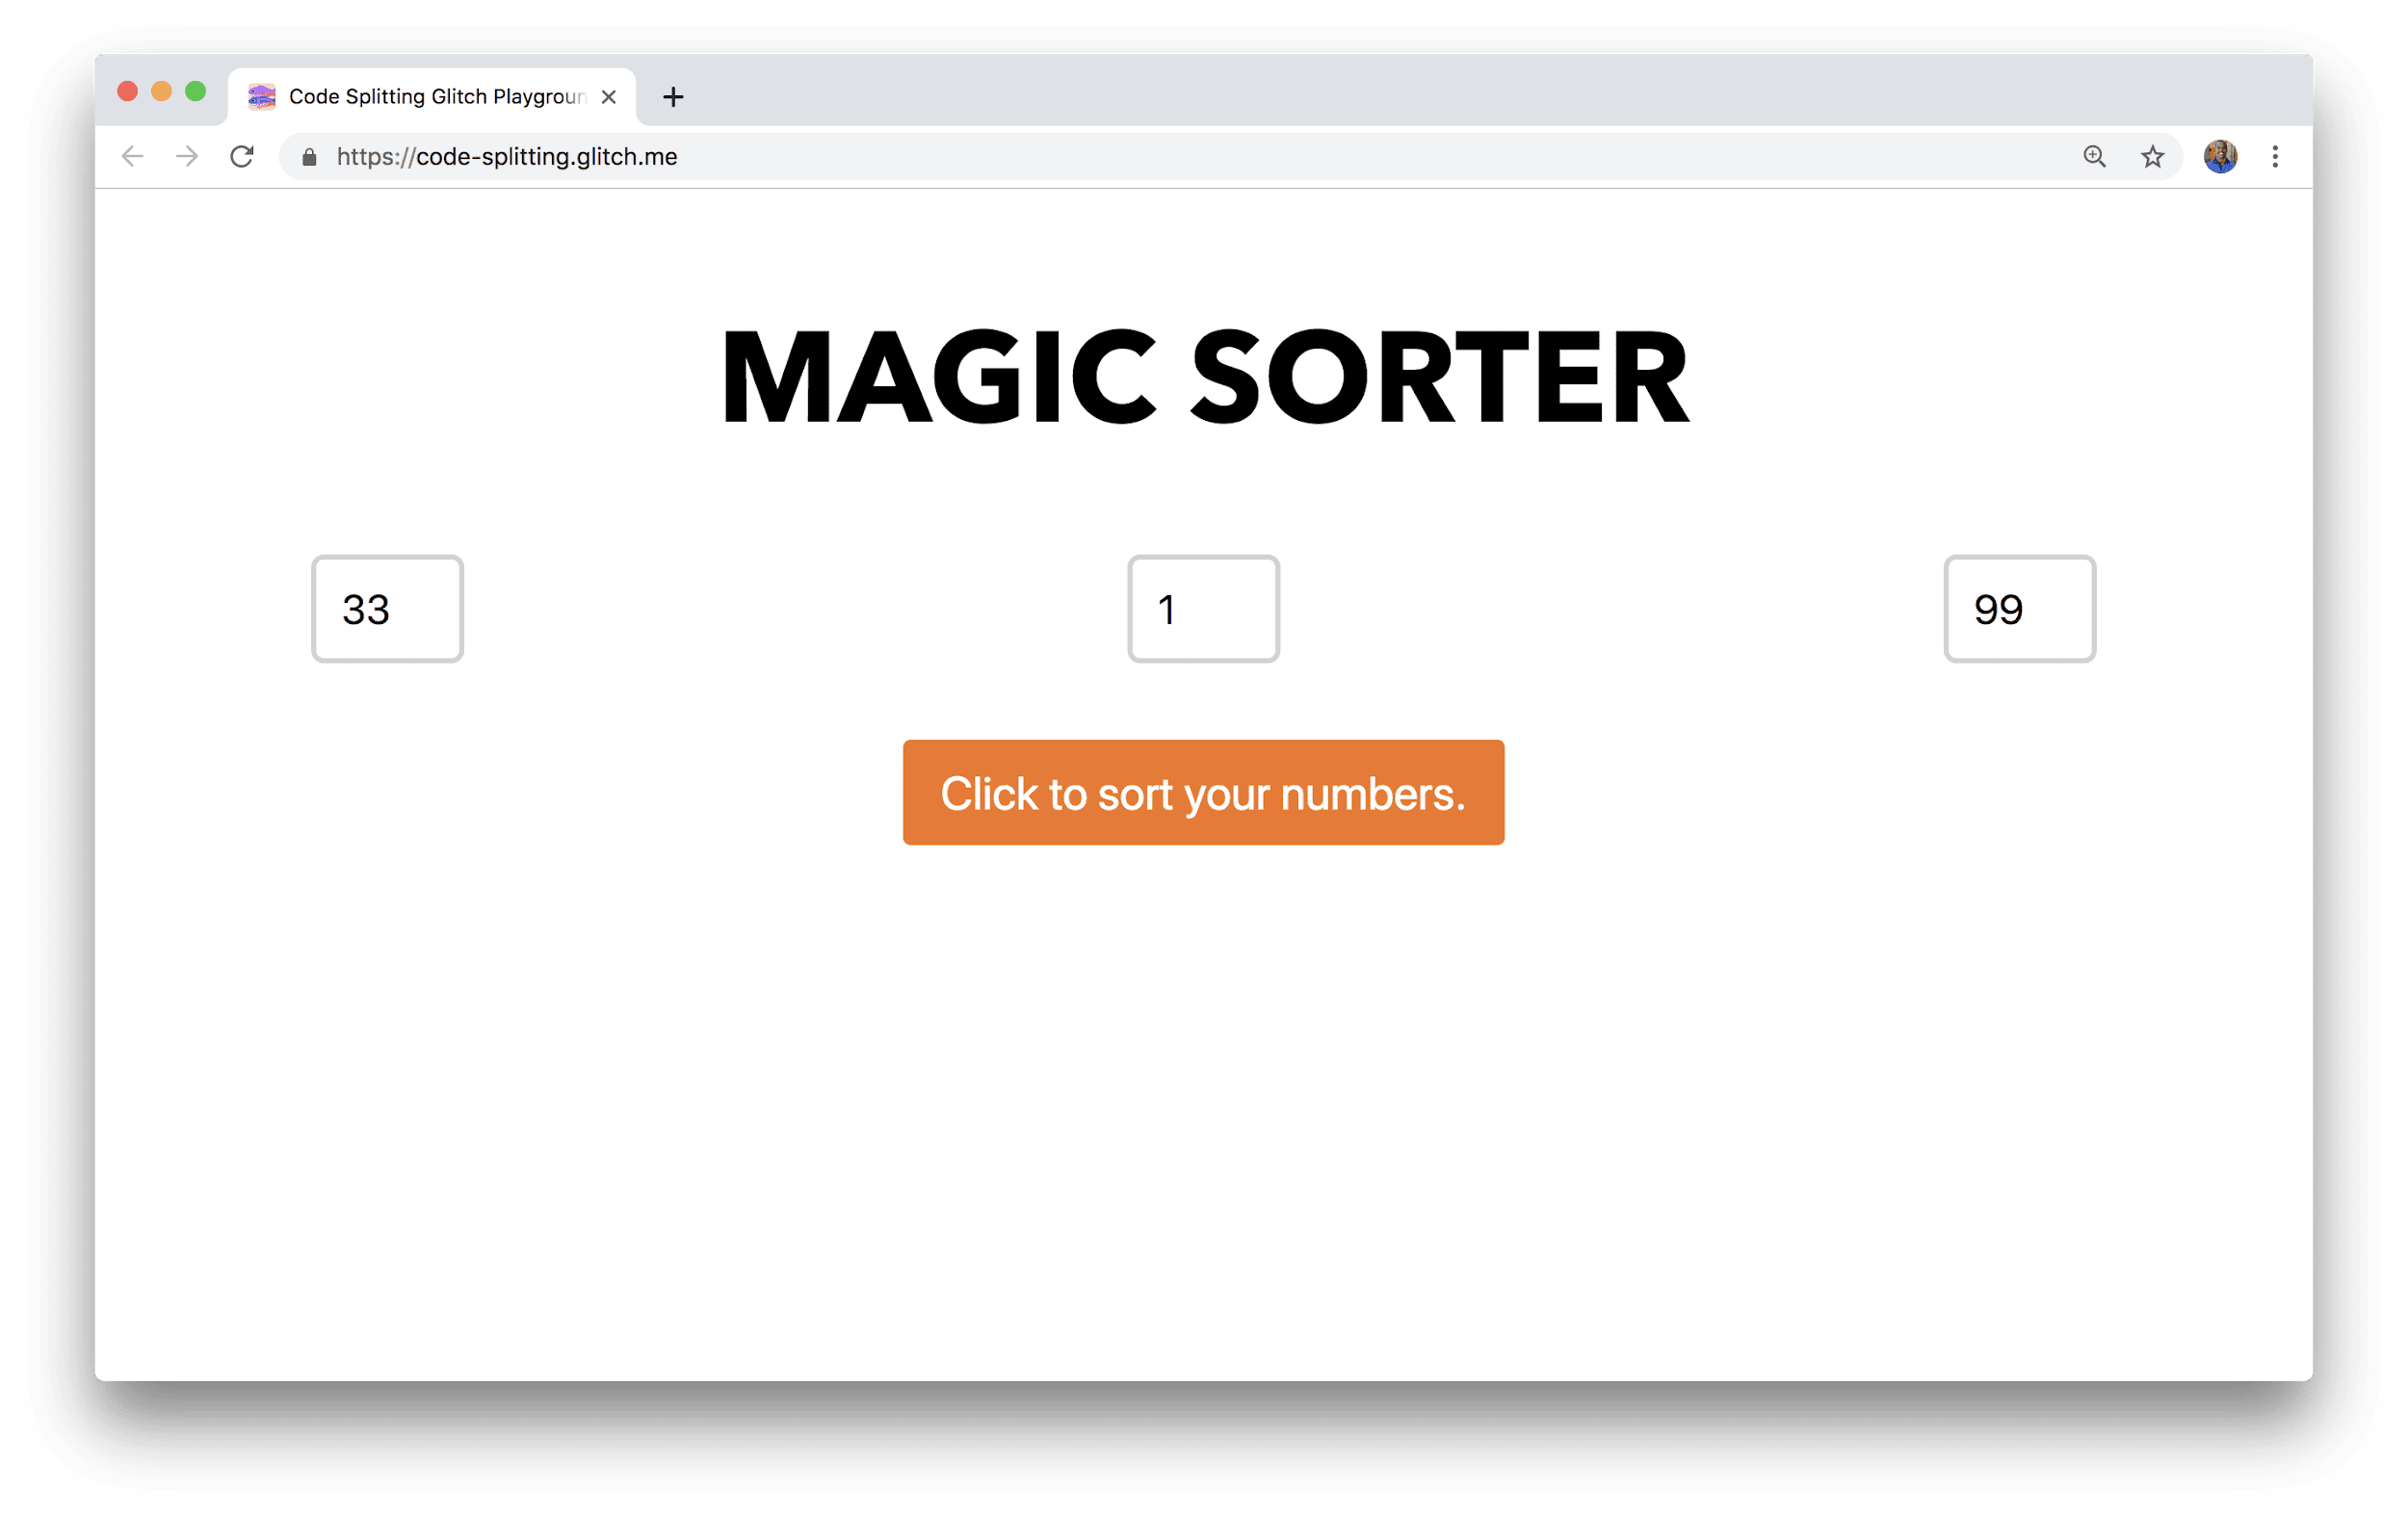 ブラウザ ウィンドウに Magic Sorter というアプリケーションが表示されている。このアプリケーションには、数値を入力する 3 つのフィールドと並べ替えボタンがある。